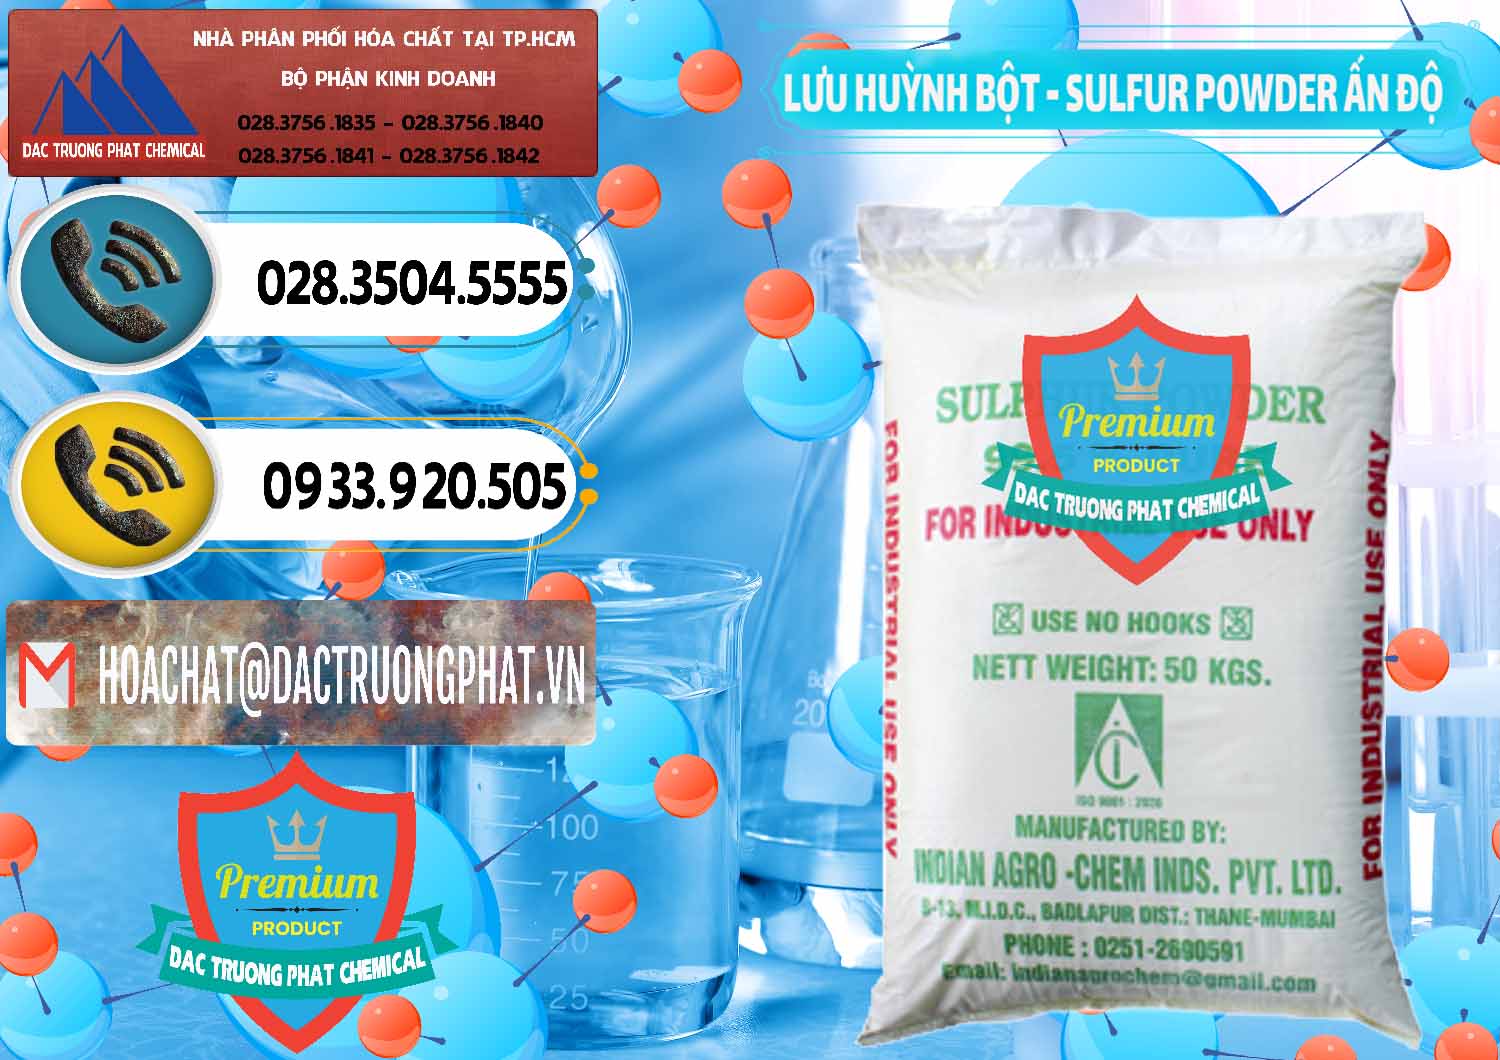 Nơi chuyên bán ( cung ứng ) Lưu huỳnh Bột - Sulfur Powder Ấn Độ India - 0347 - Công ty chuyên cung cấp & kinh doanh hóa chất tại TP.HCM - hoachatdetnhuom.vn